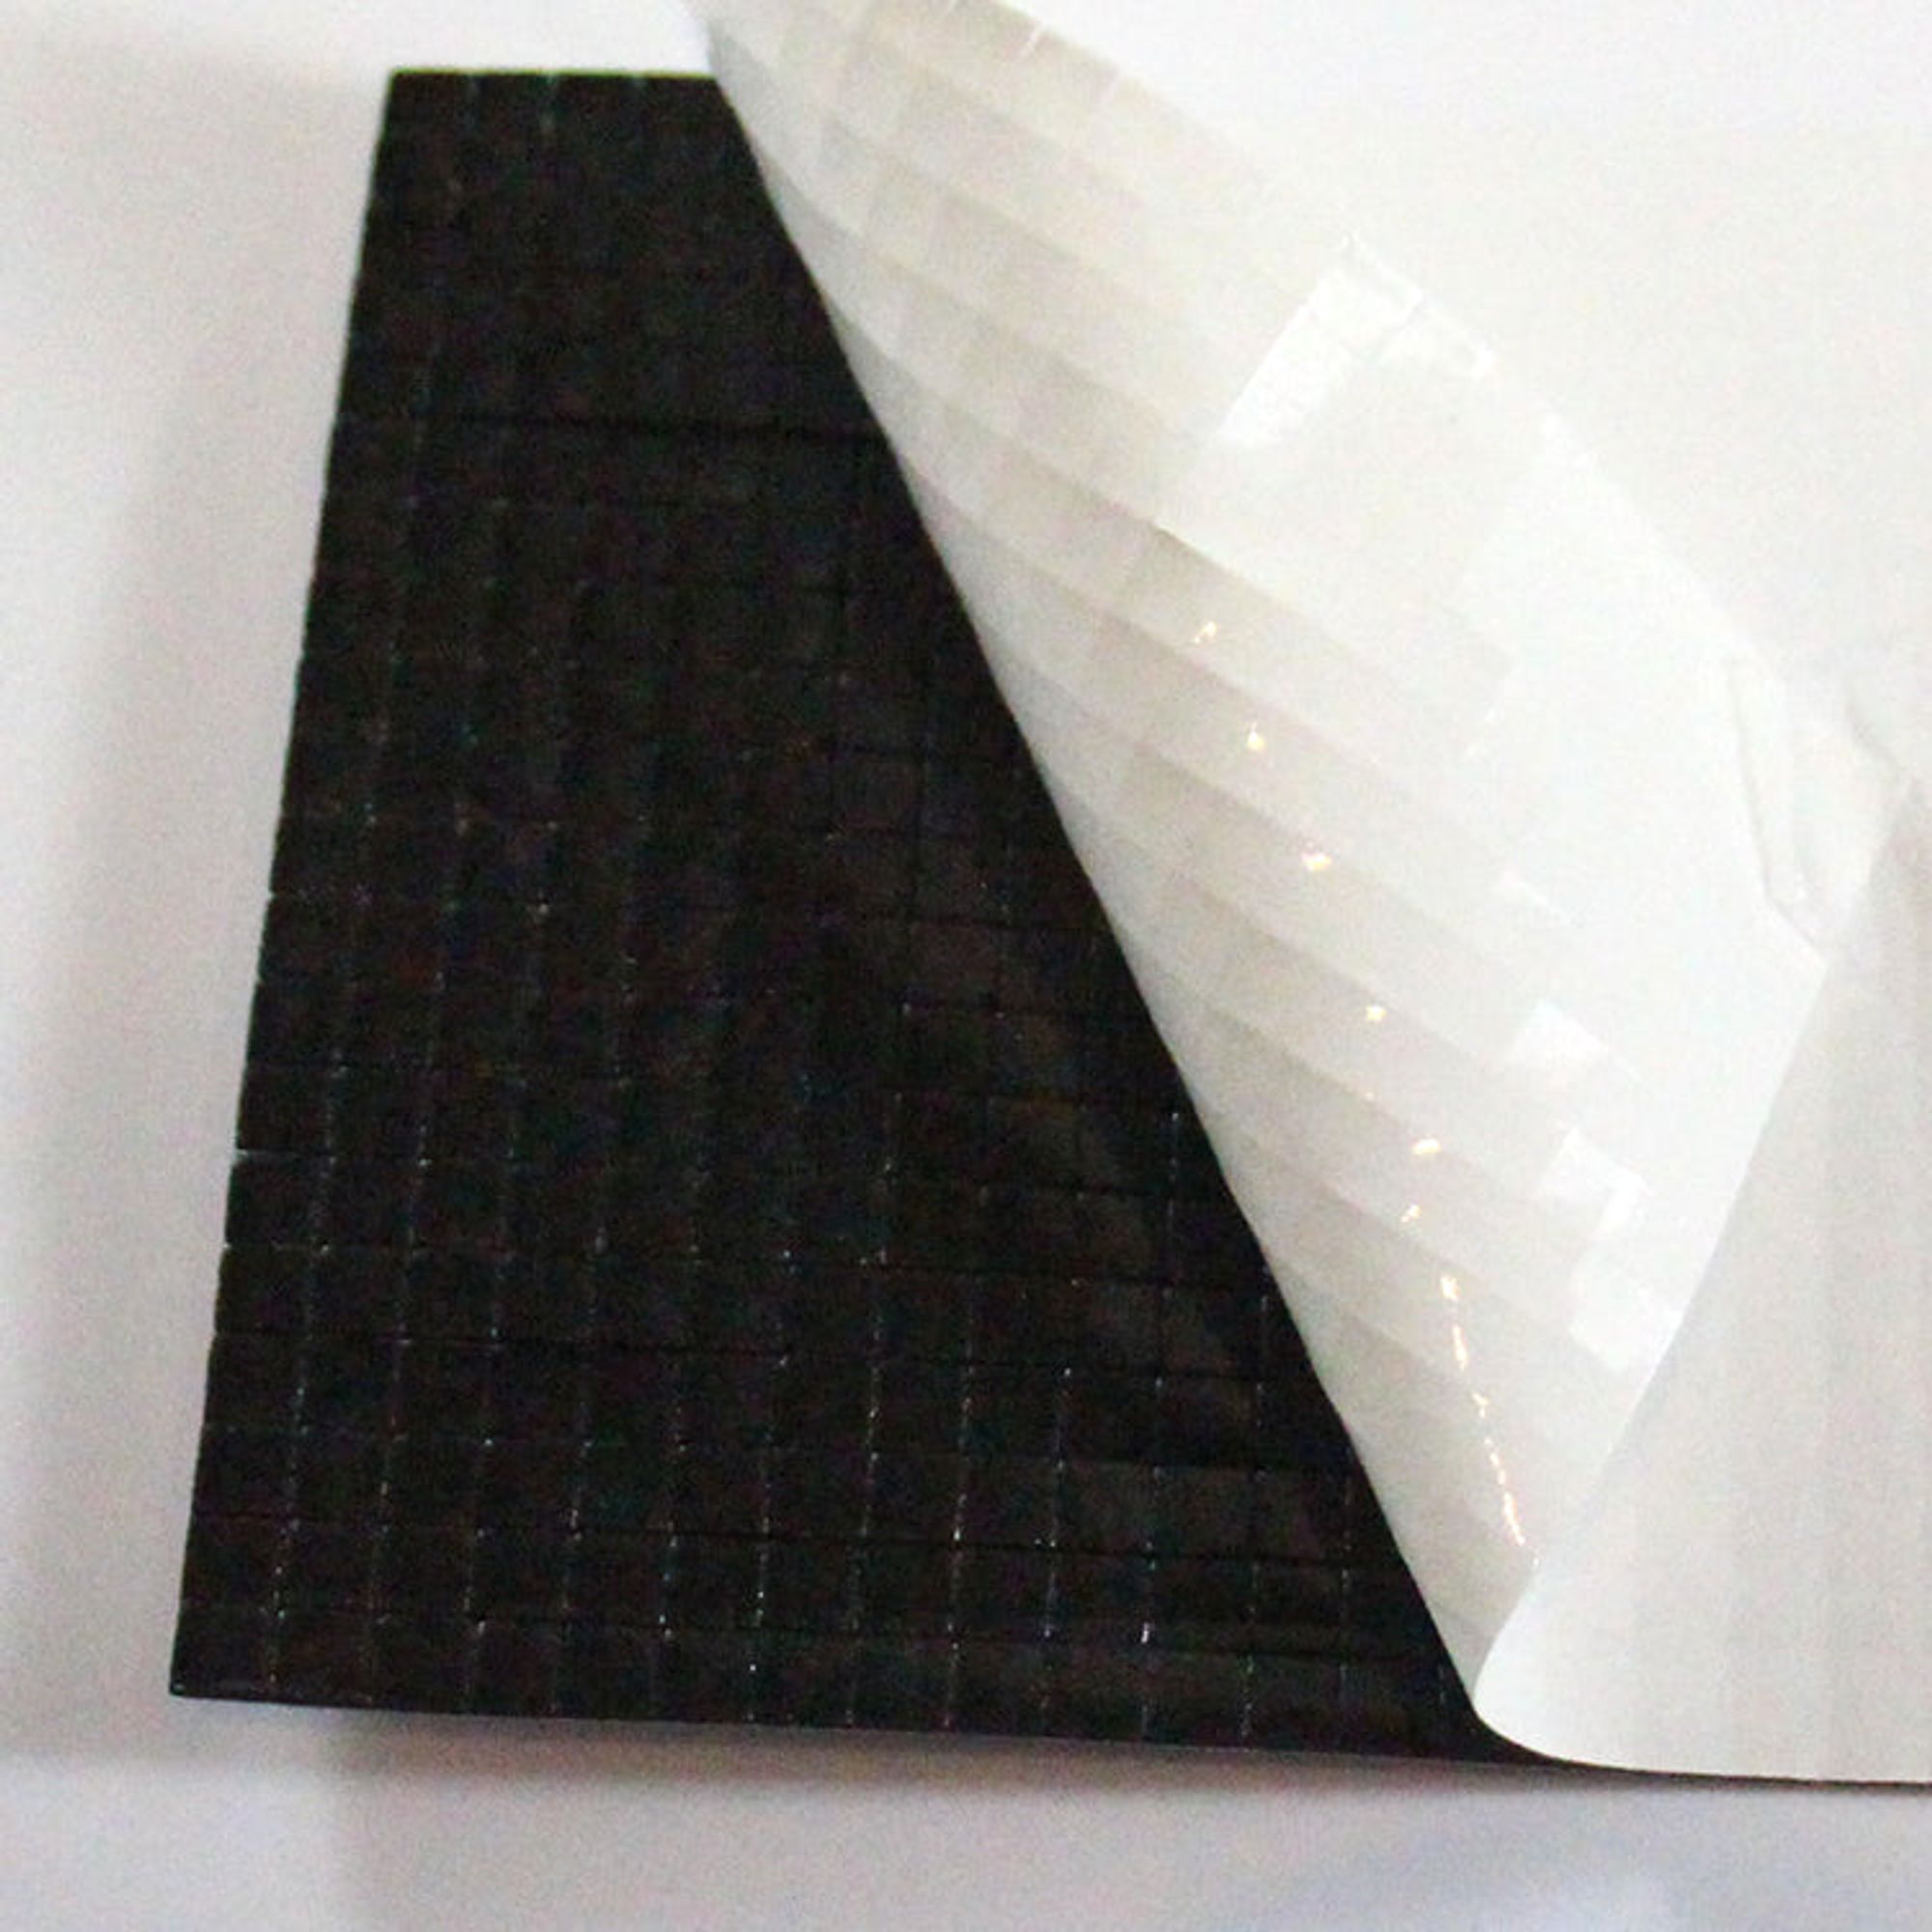 Craft Perfect Dimensional Foam Pads 25mmX25mm-Black 9755E